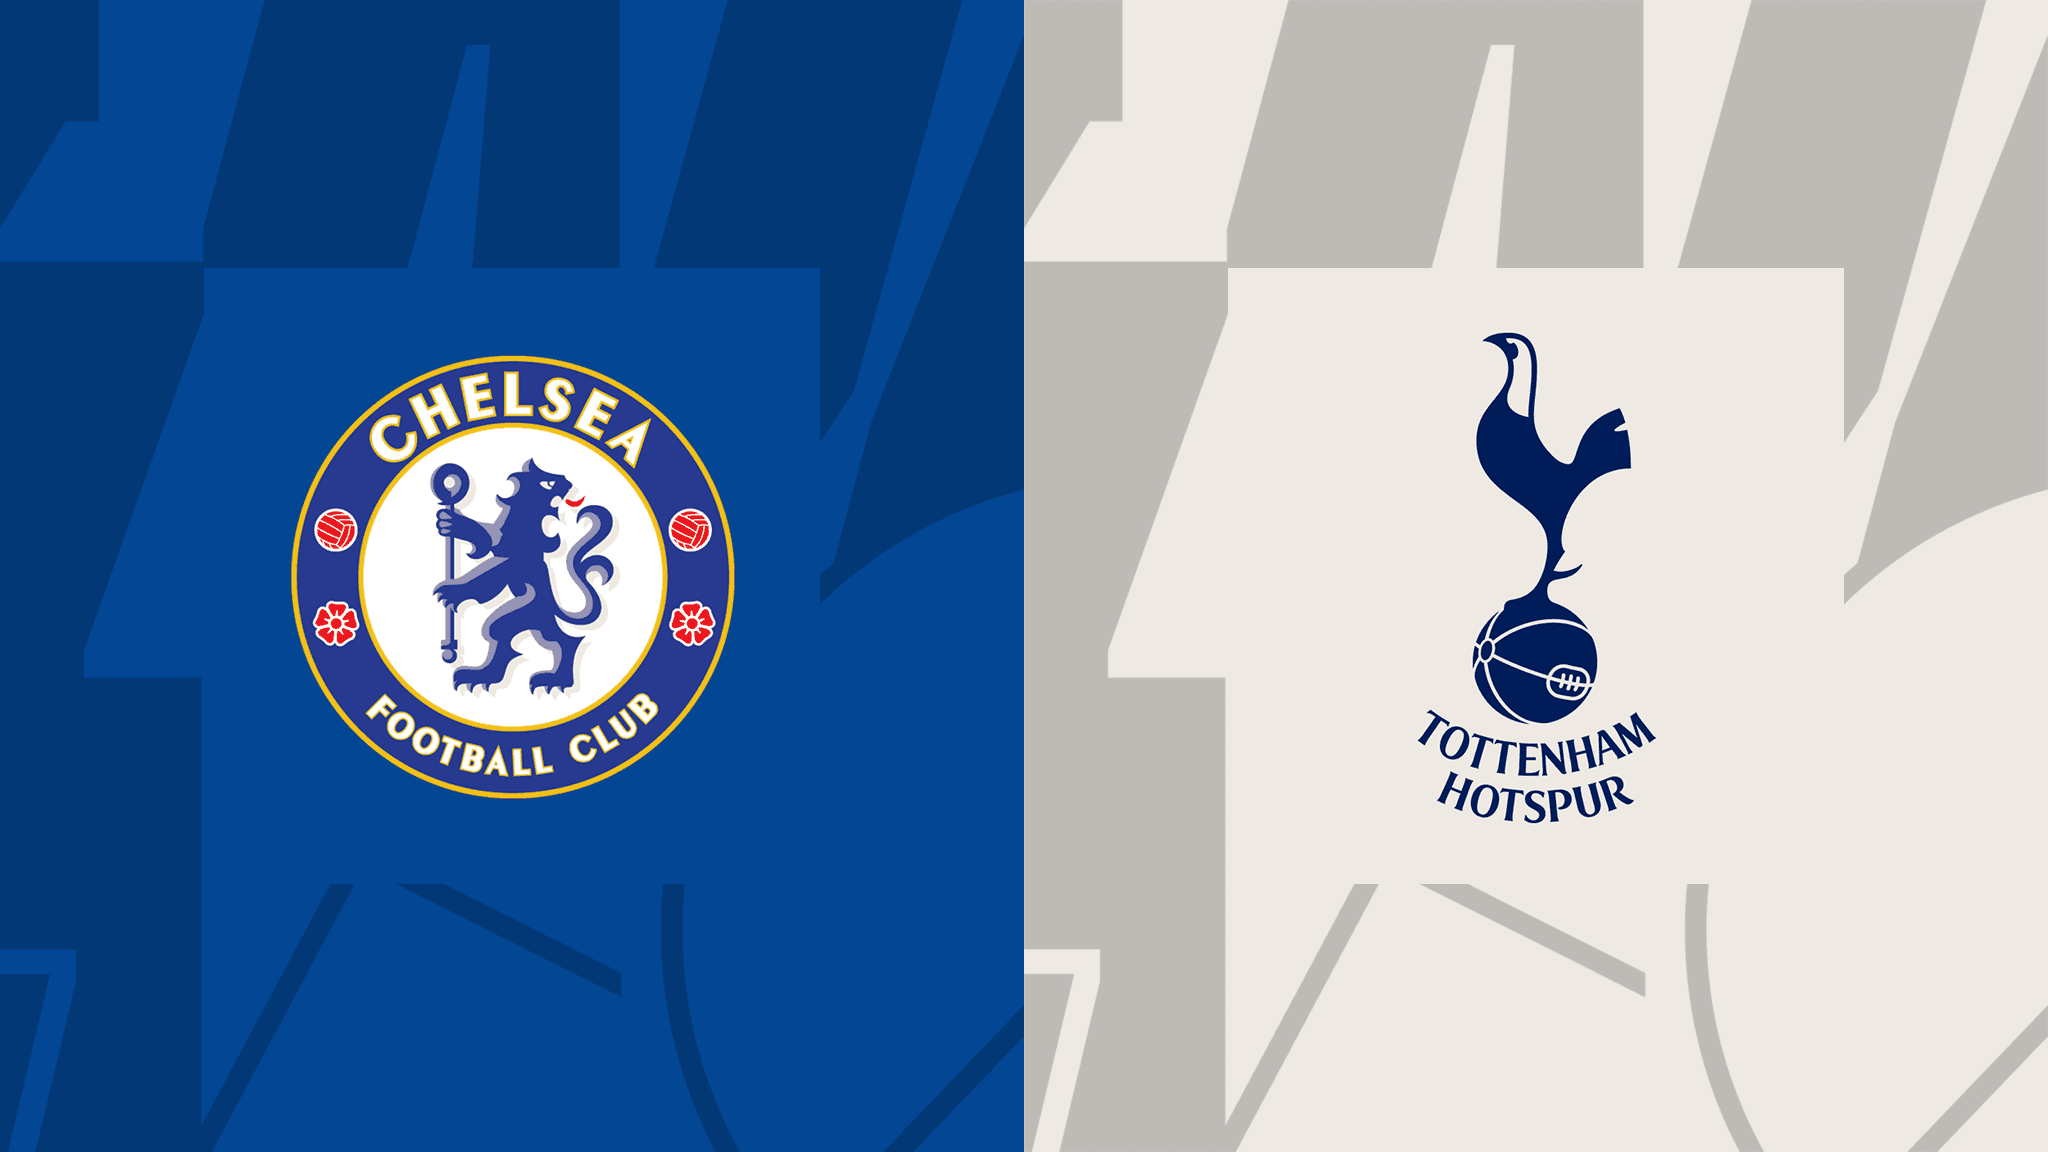  مشاهدة مباراة تشيلسي و توتنهام هوتسبير بث مباشر 14/08/2022 Chelsea vs Tottenham Hotspur